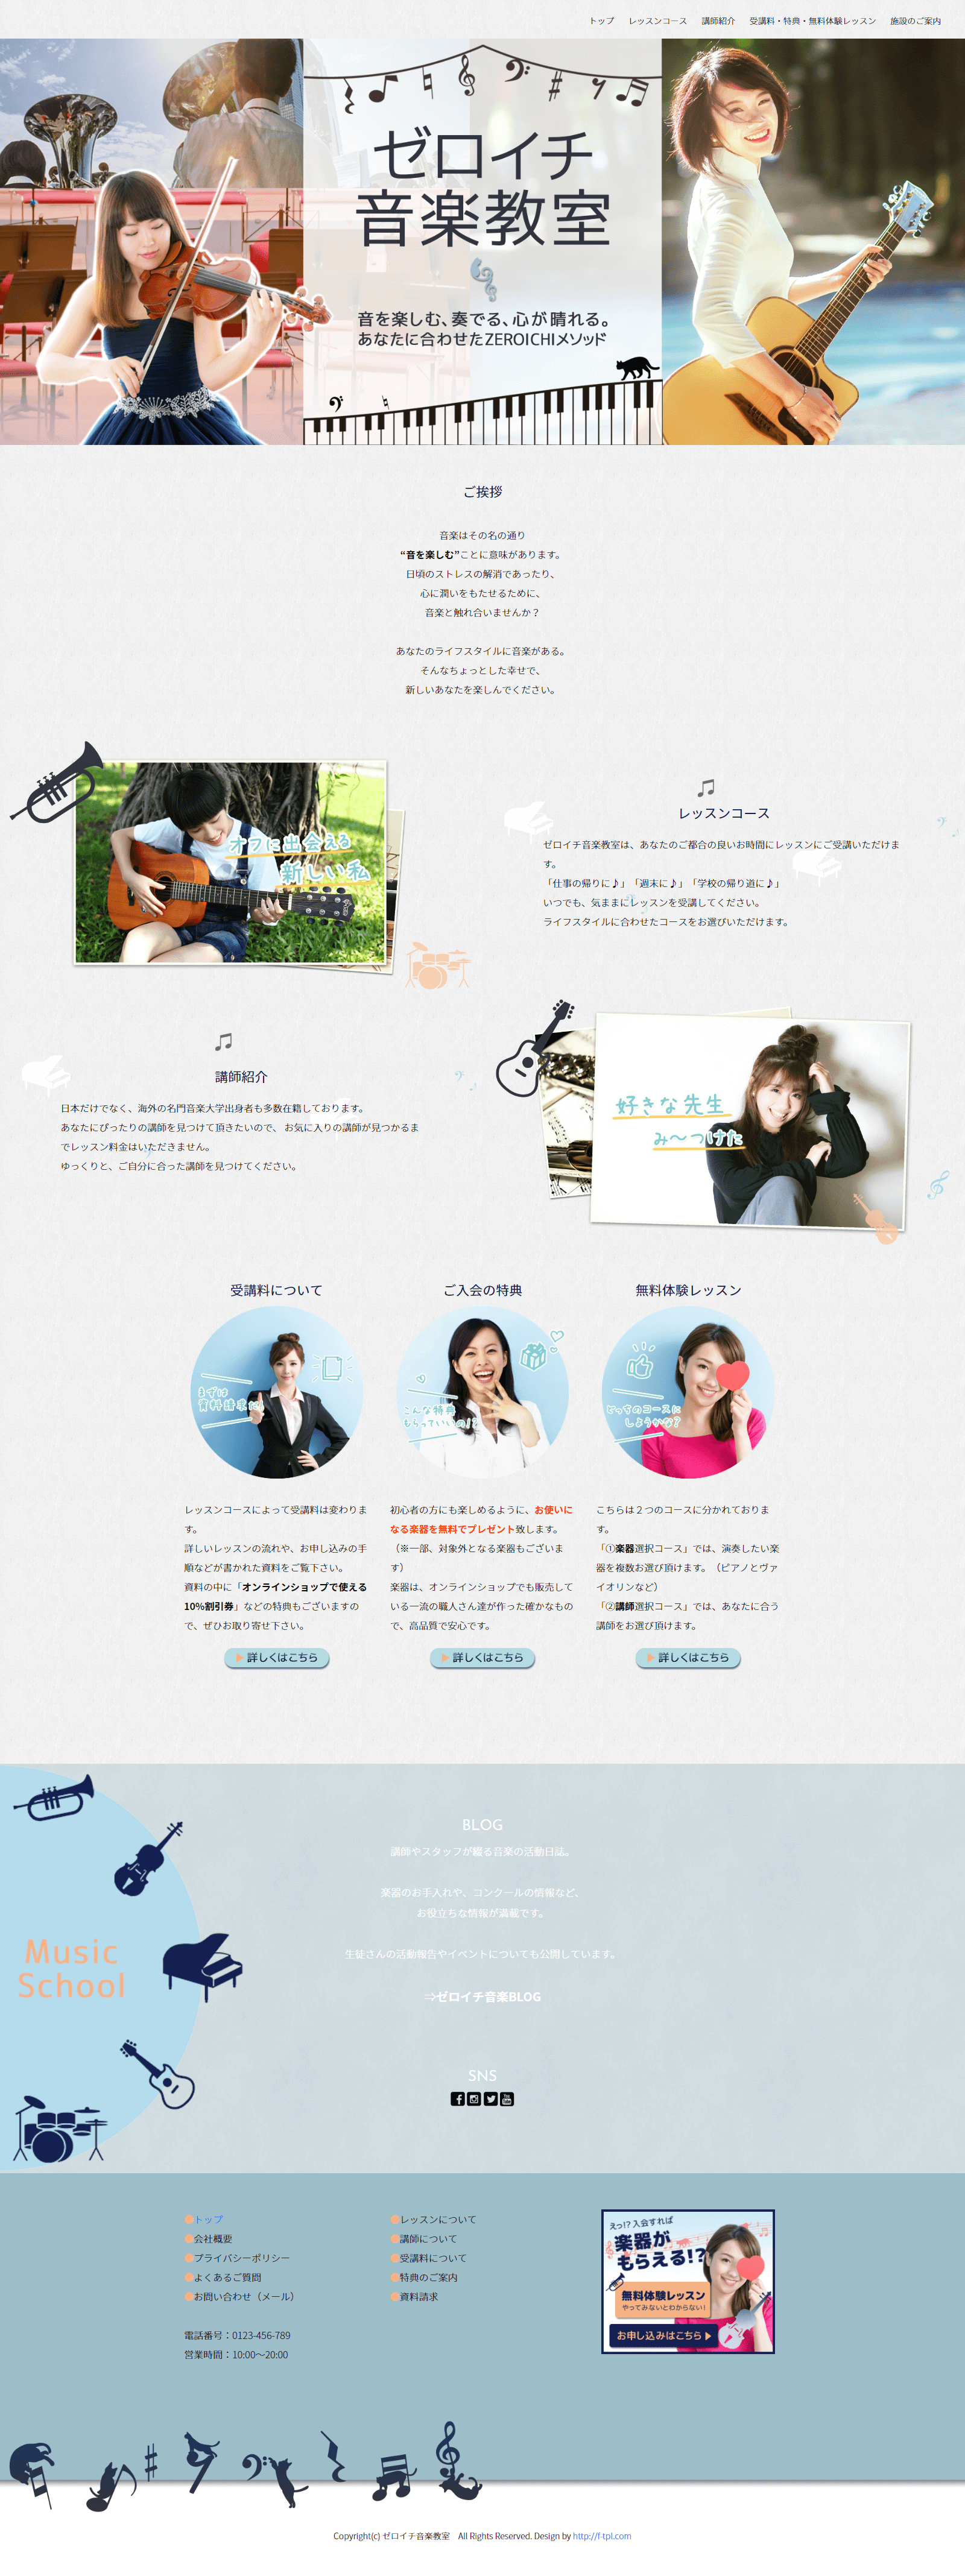 音楽教室のホームページの画像